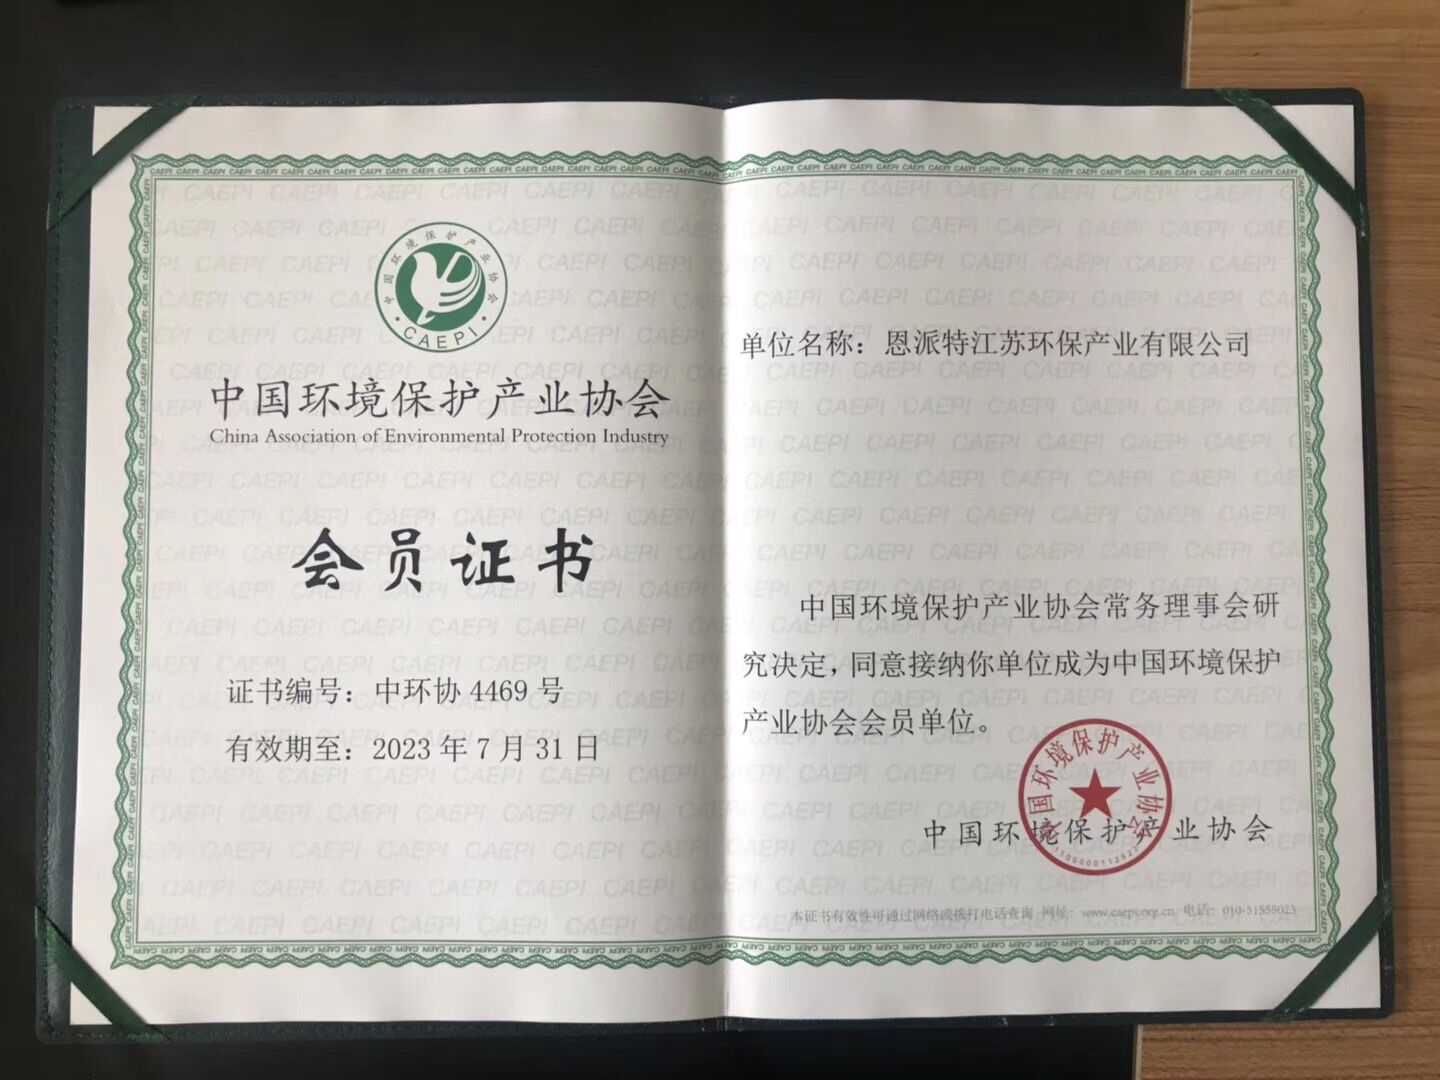 恩派特正式成为中国环境保护产业协会会员